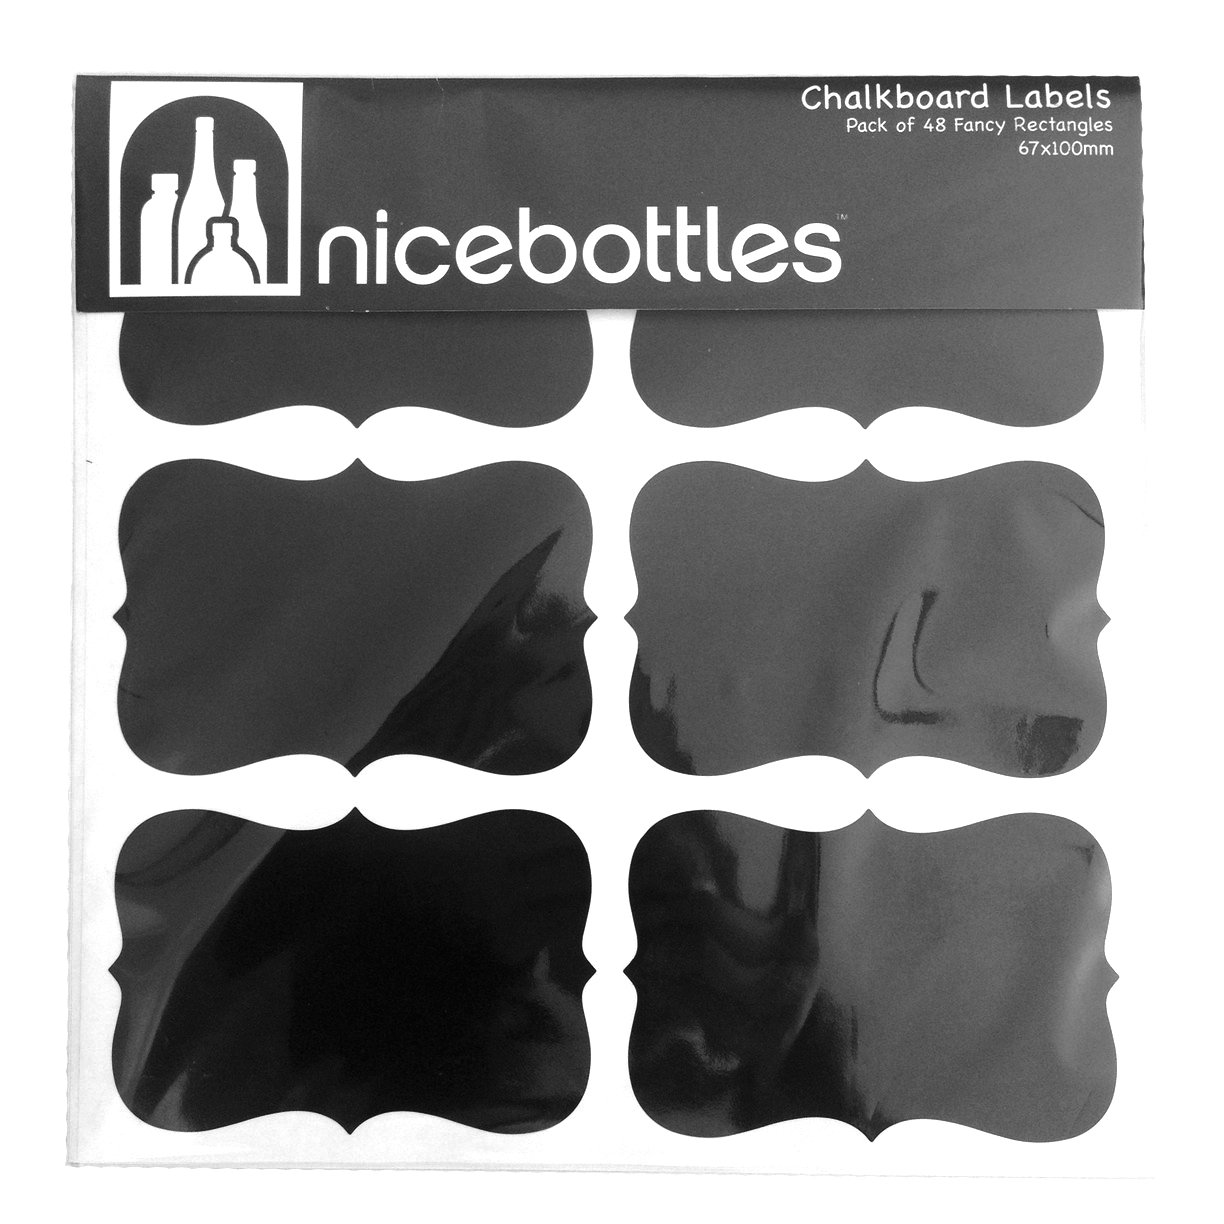 Book Cover nicebottles Chalkboard Labels, Large Fancy Rectangles - 3